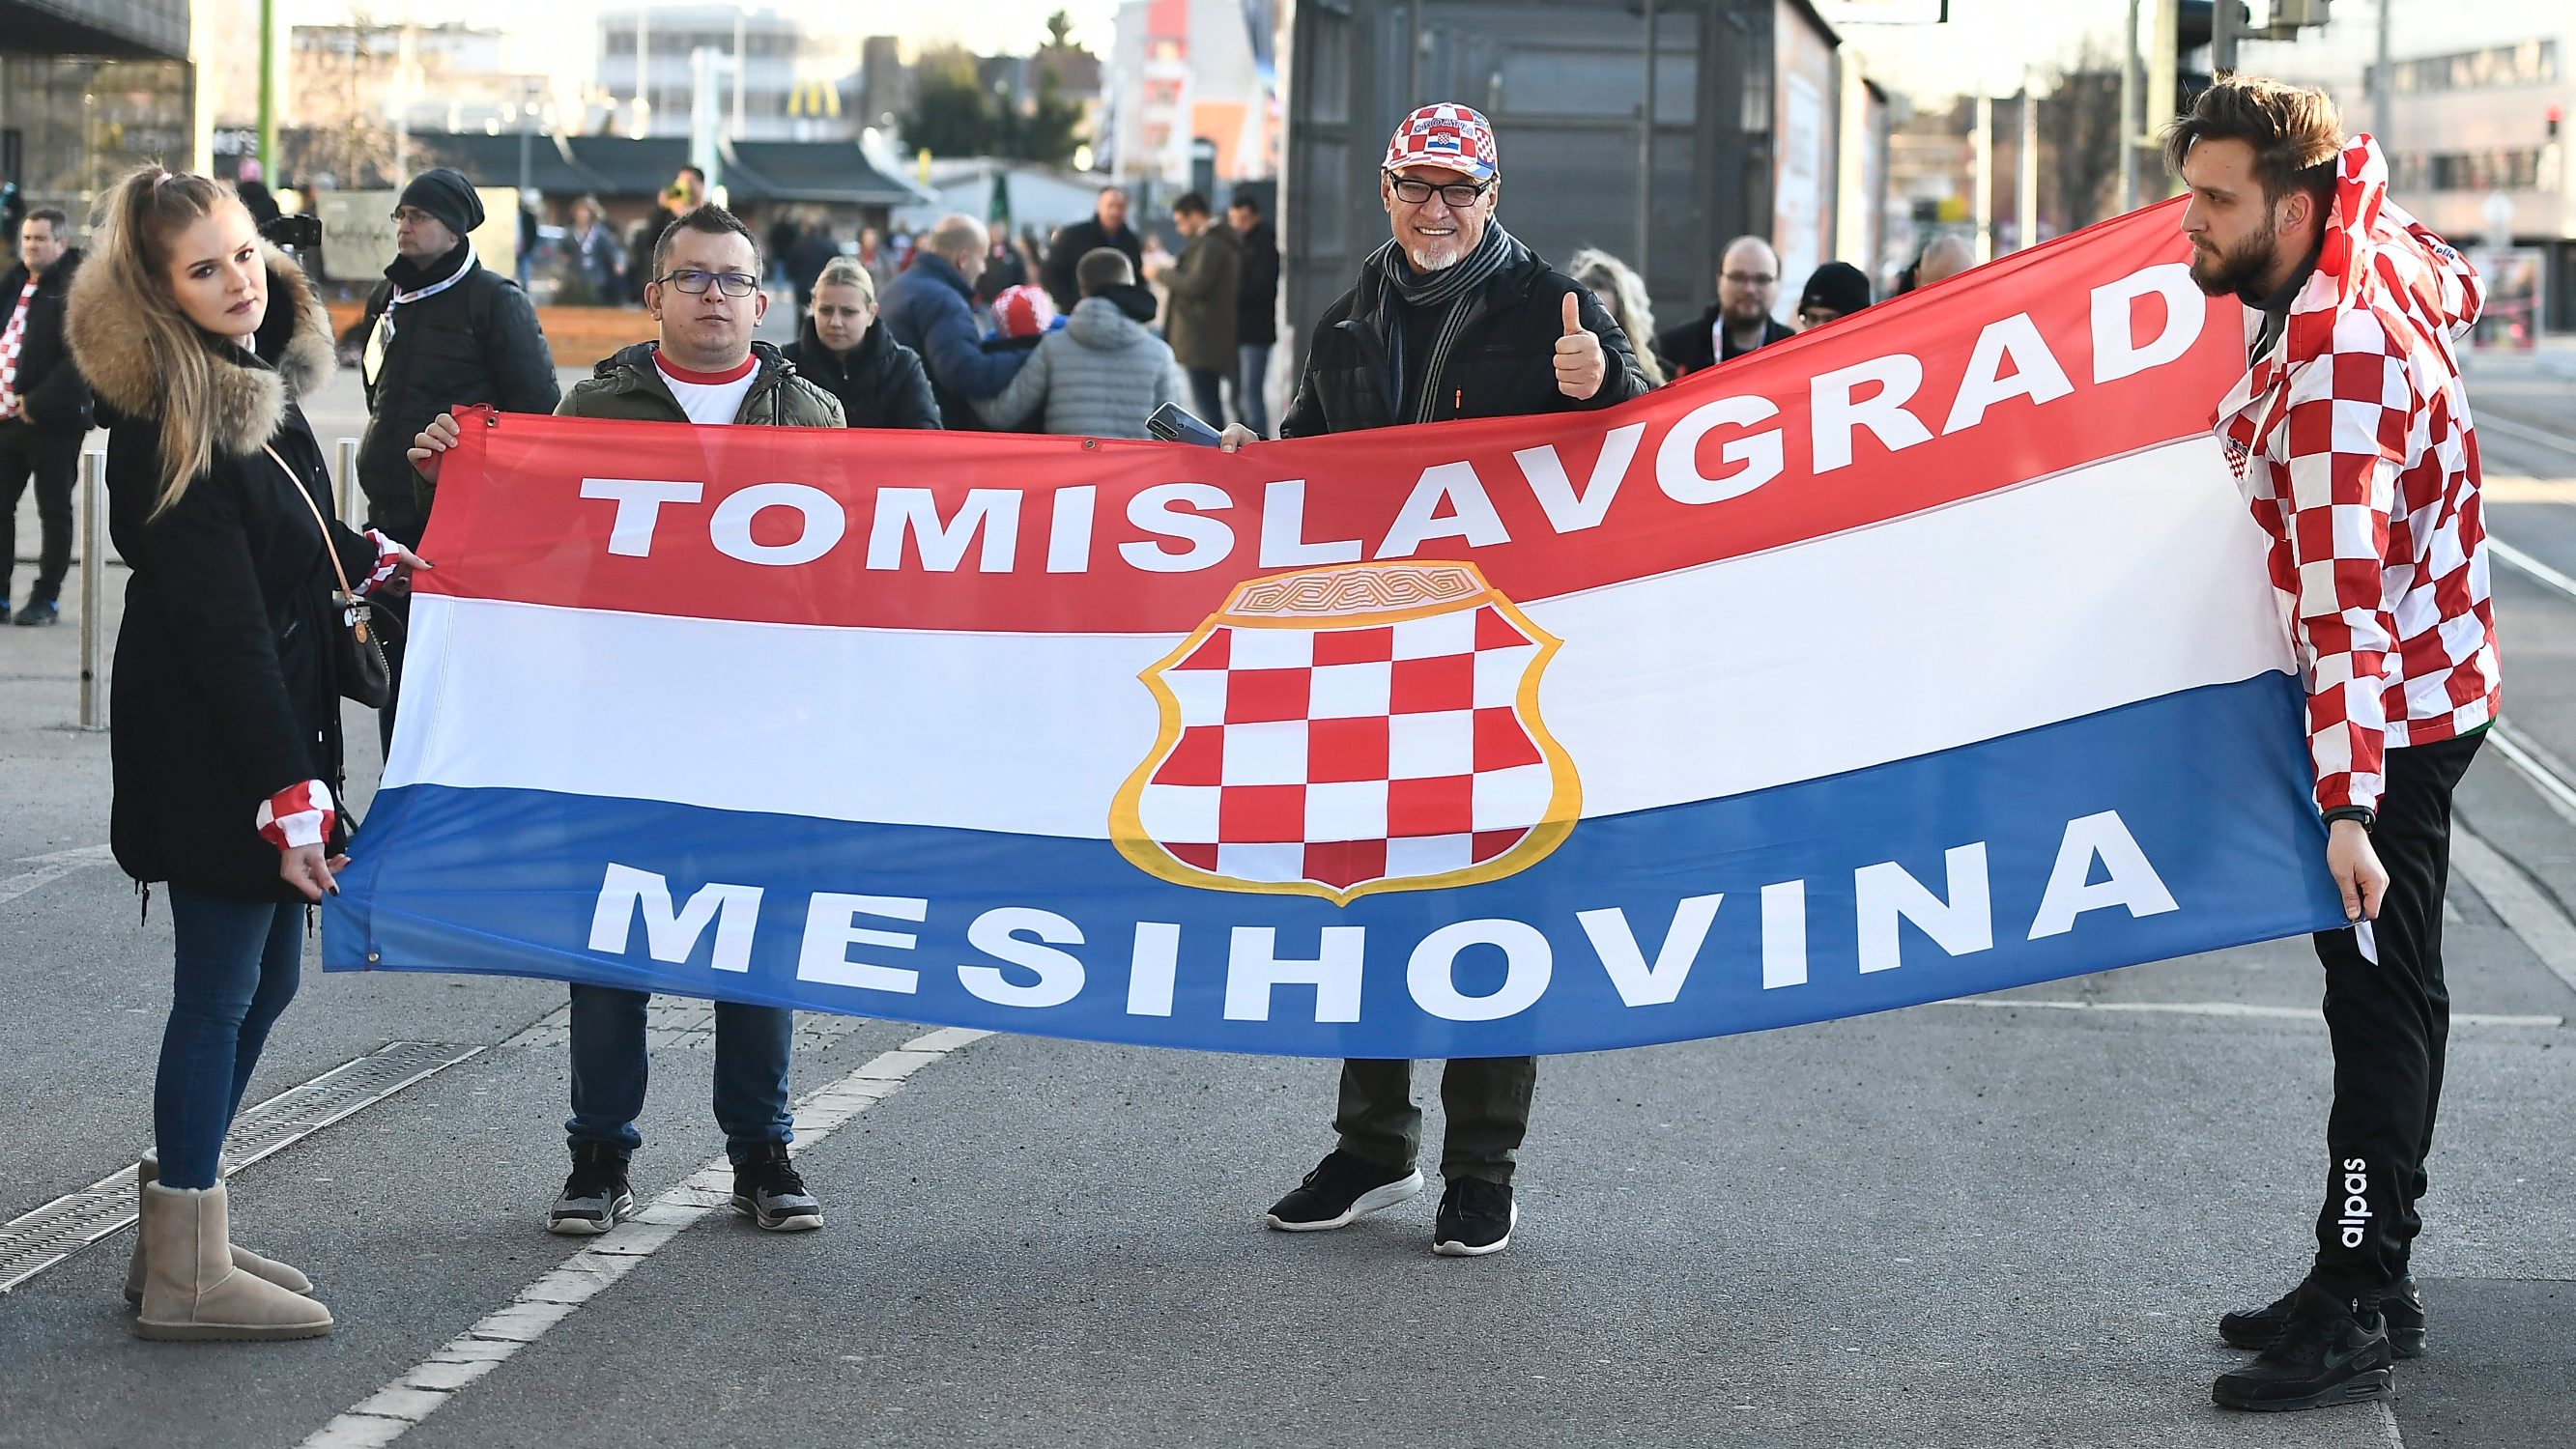 Graz, 110120. 
Hrvatski navijaci poceli su pristizati pred rukometnu utakmicu izmedju Hrvatske i Bjelorusije.
Foto: Ante Cizmic / CROPIX